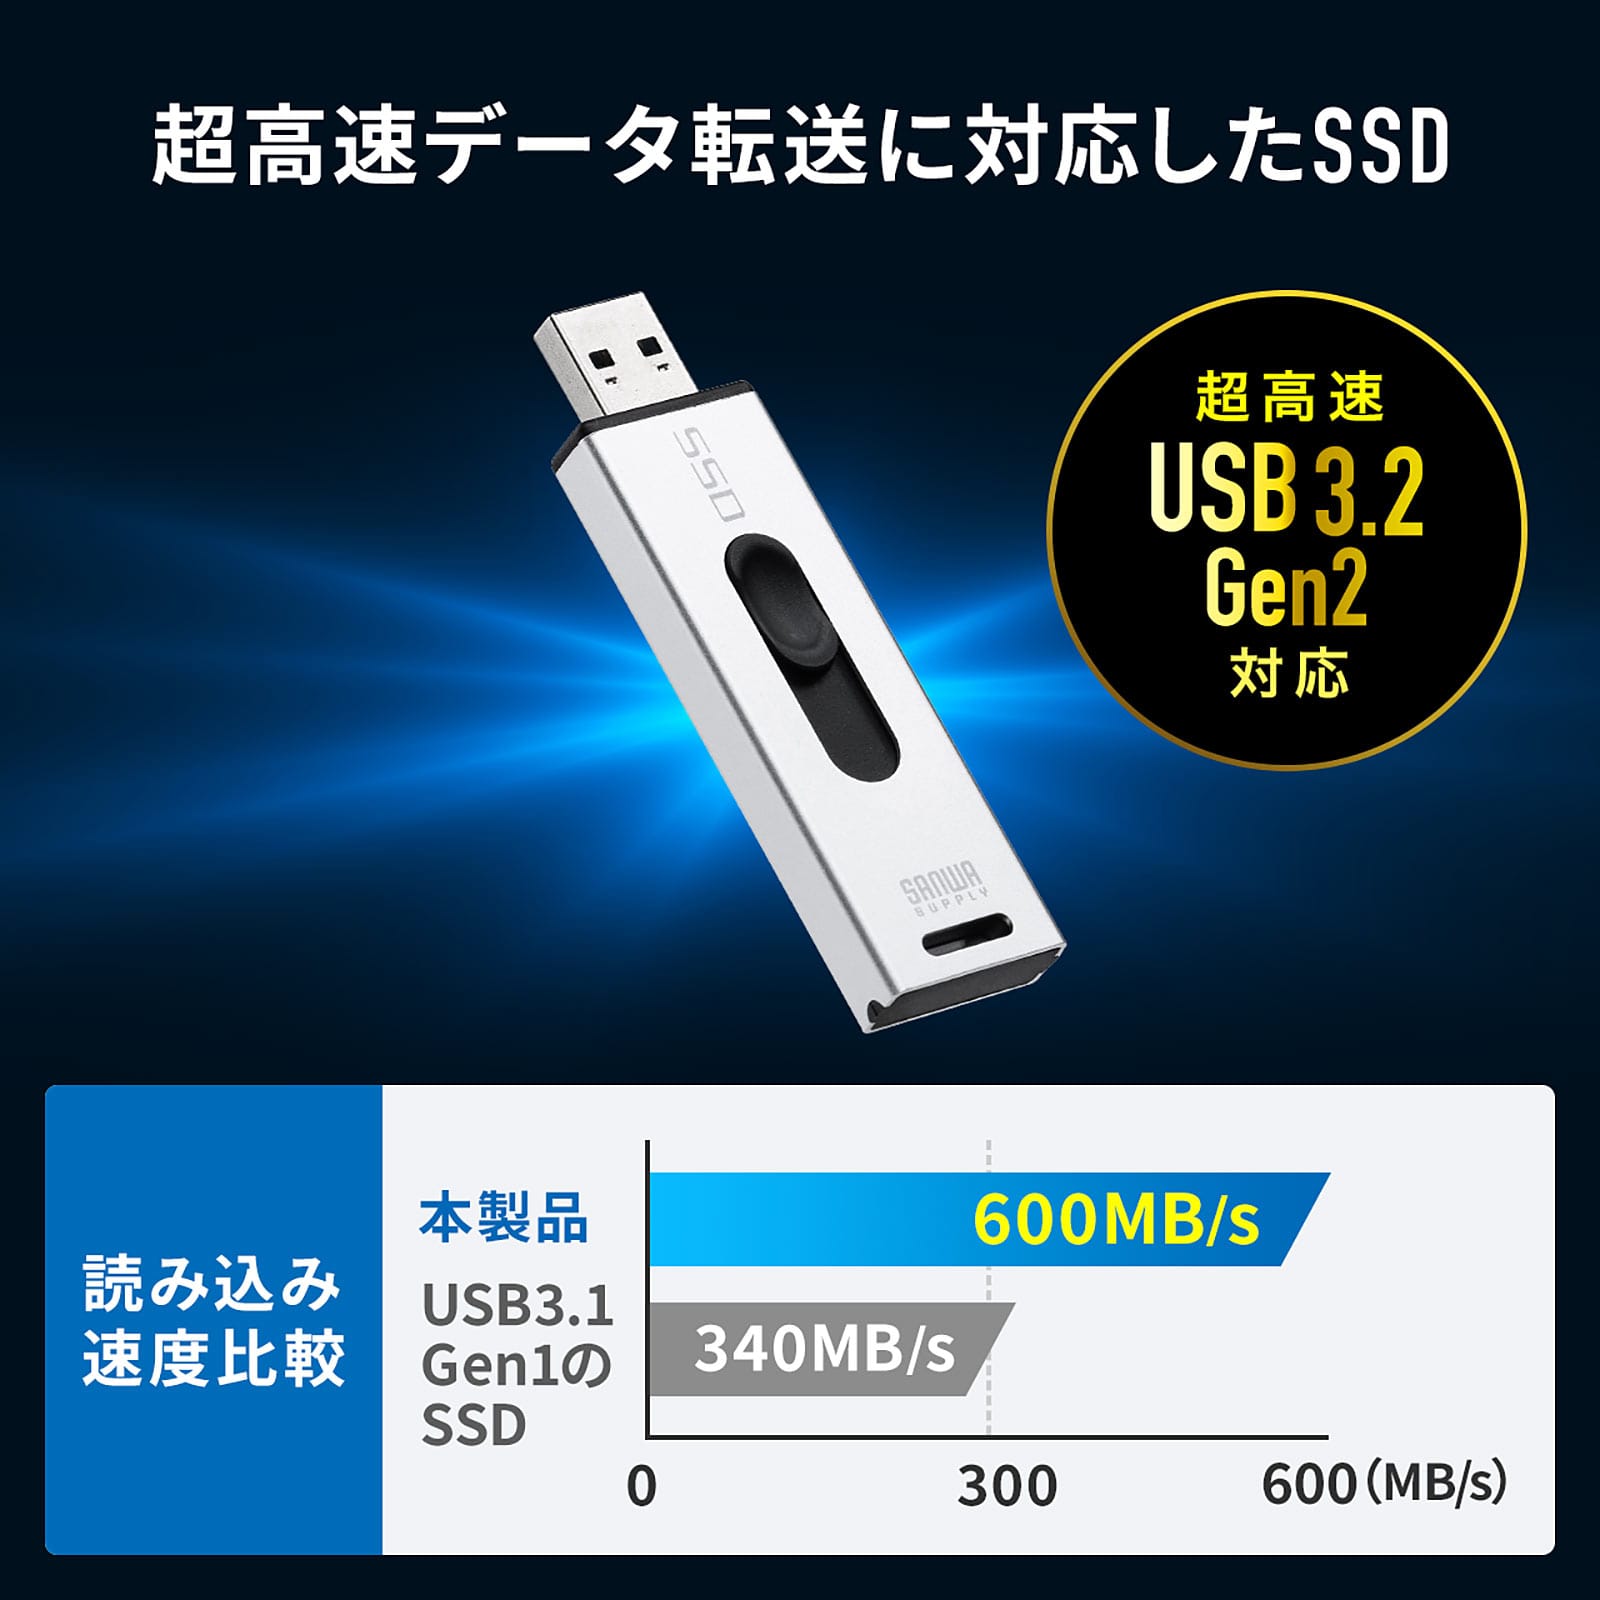 サンワサプライ、USB 3.2 Gen 2対応のスティック型SSDを発売